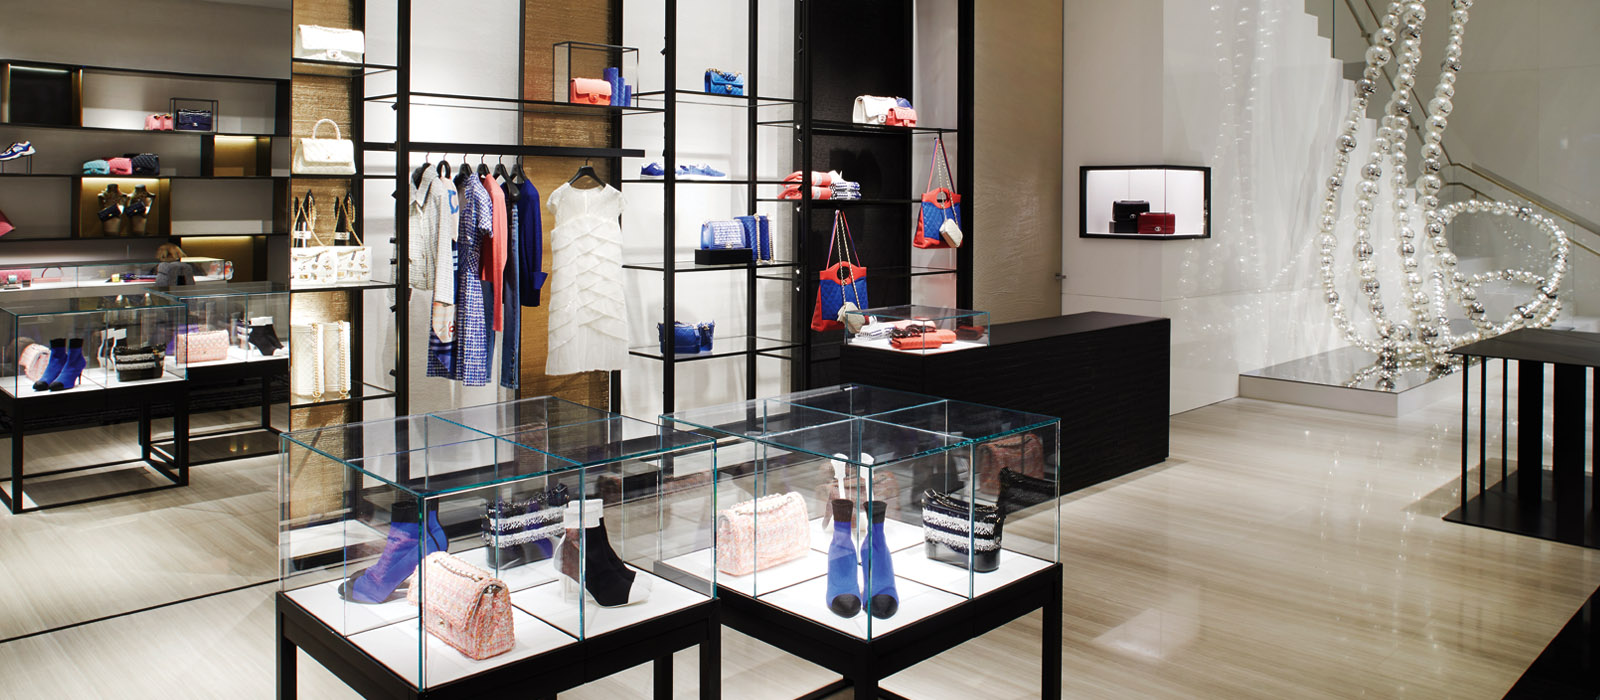 Chanel mở cửa hàng boutique thứ hai tại Paris  Charles de Gaulle   StyleRepublikcom  Thời Trang sáng tạo và kinh doanh